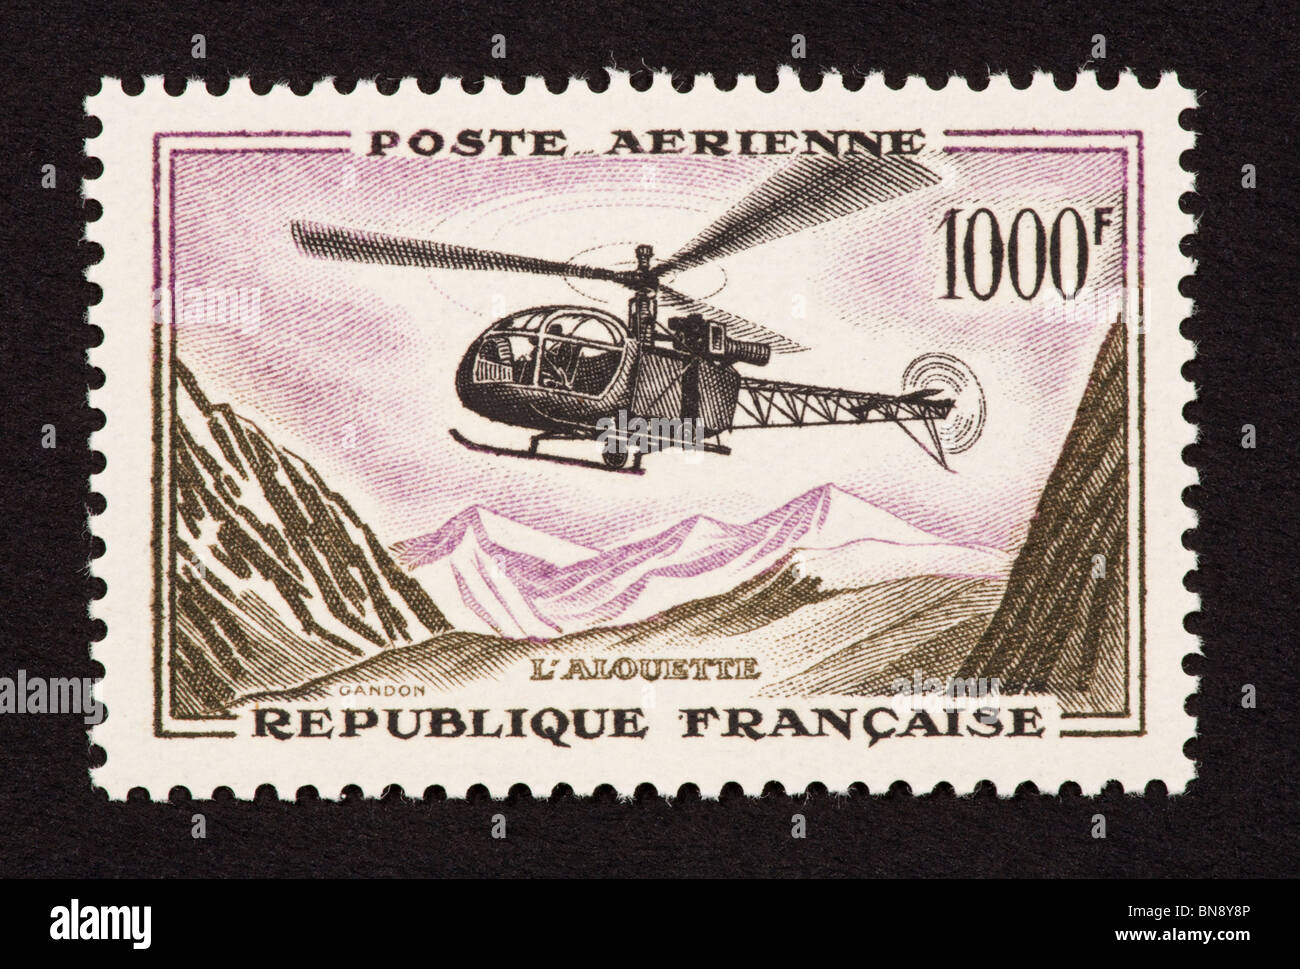 Timbre-poste de la France représentant l'hélicoptère Alouette. Banque D'Images